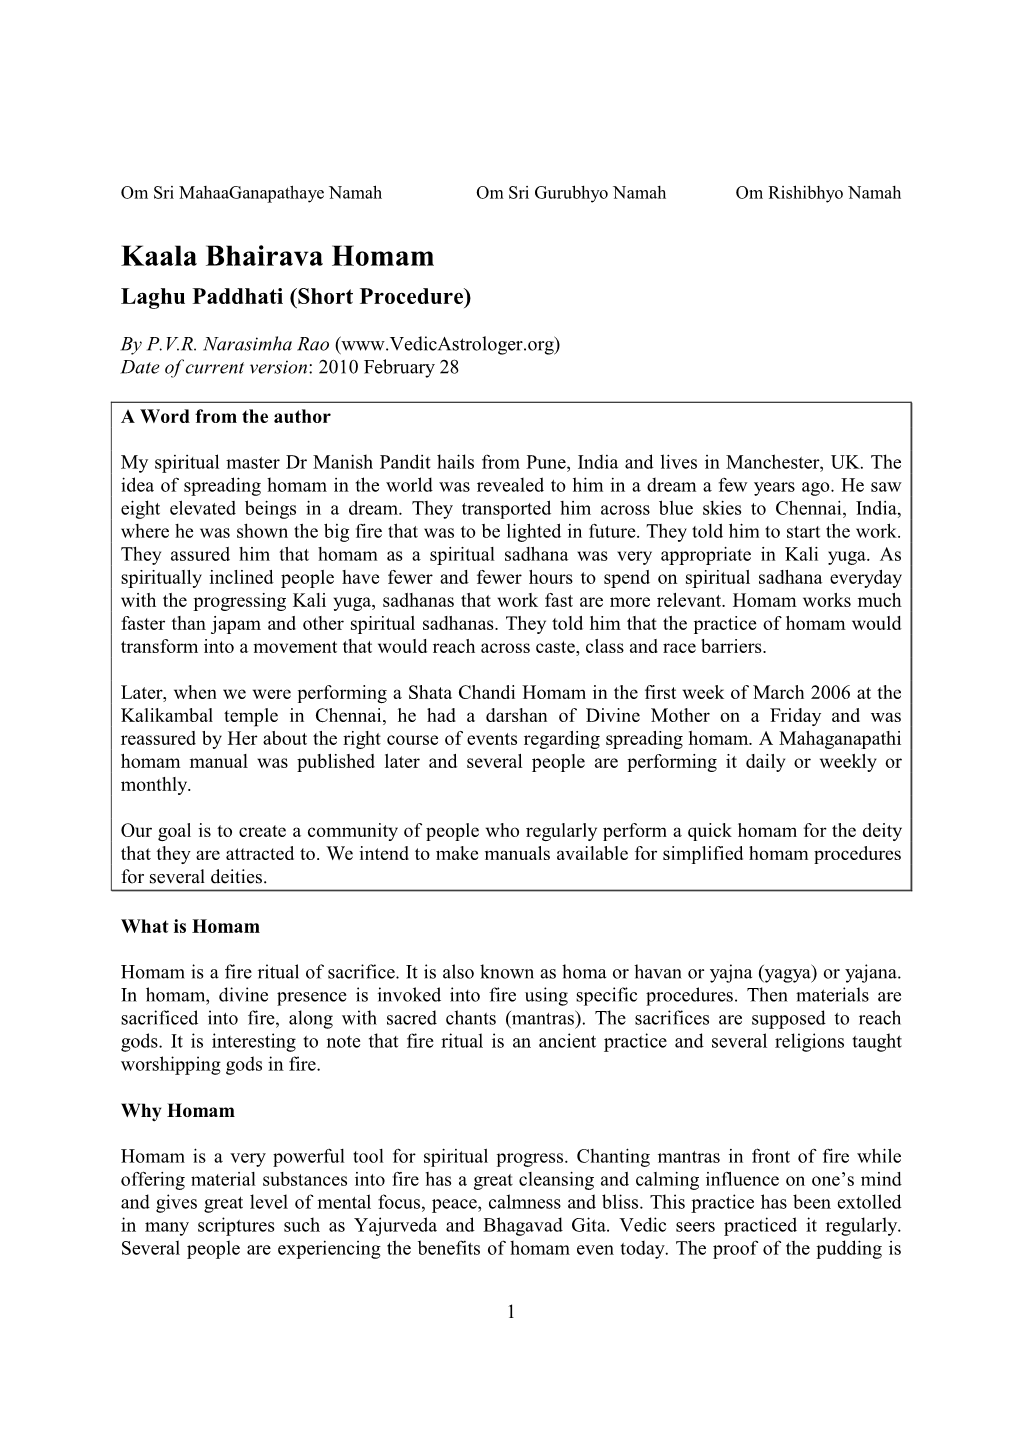 Kaala Bhairava Homam Laghu Paddhati (Short Procedure)